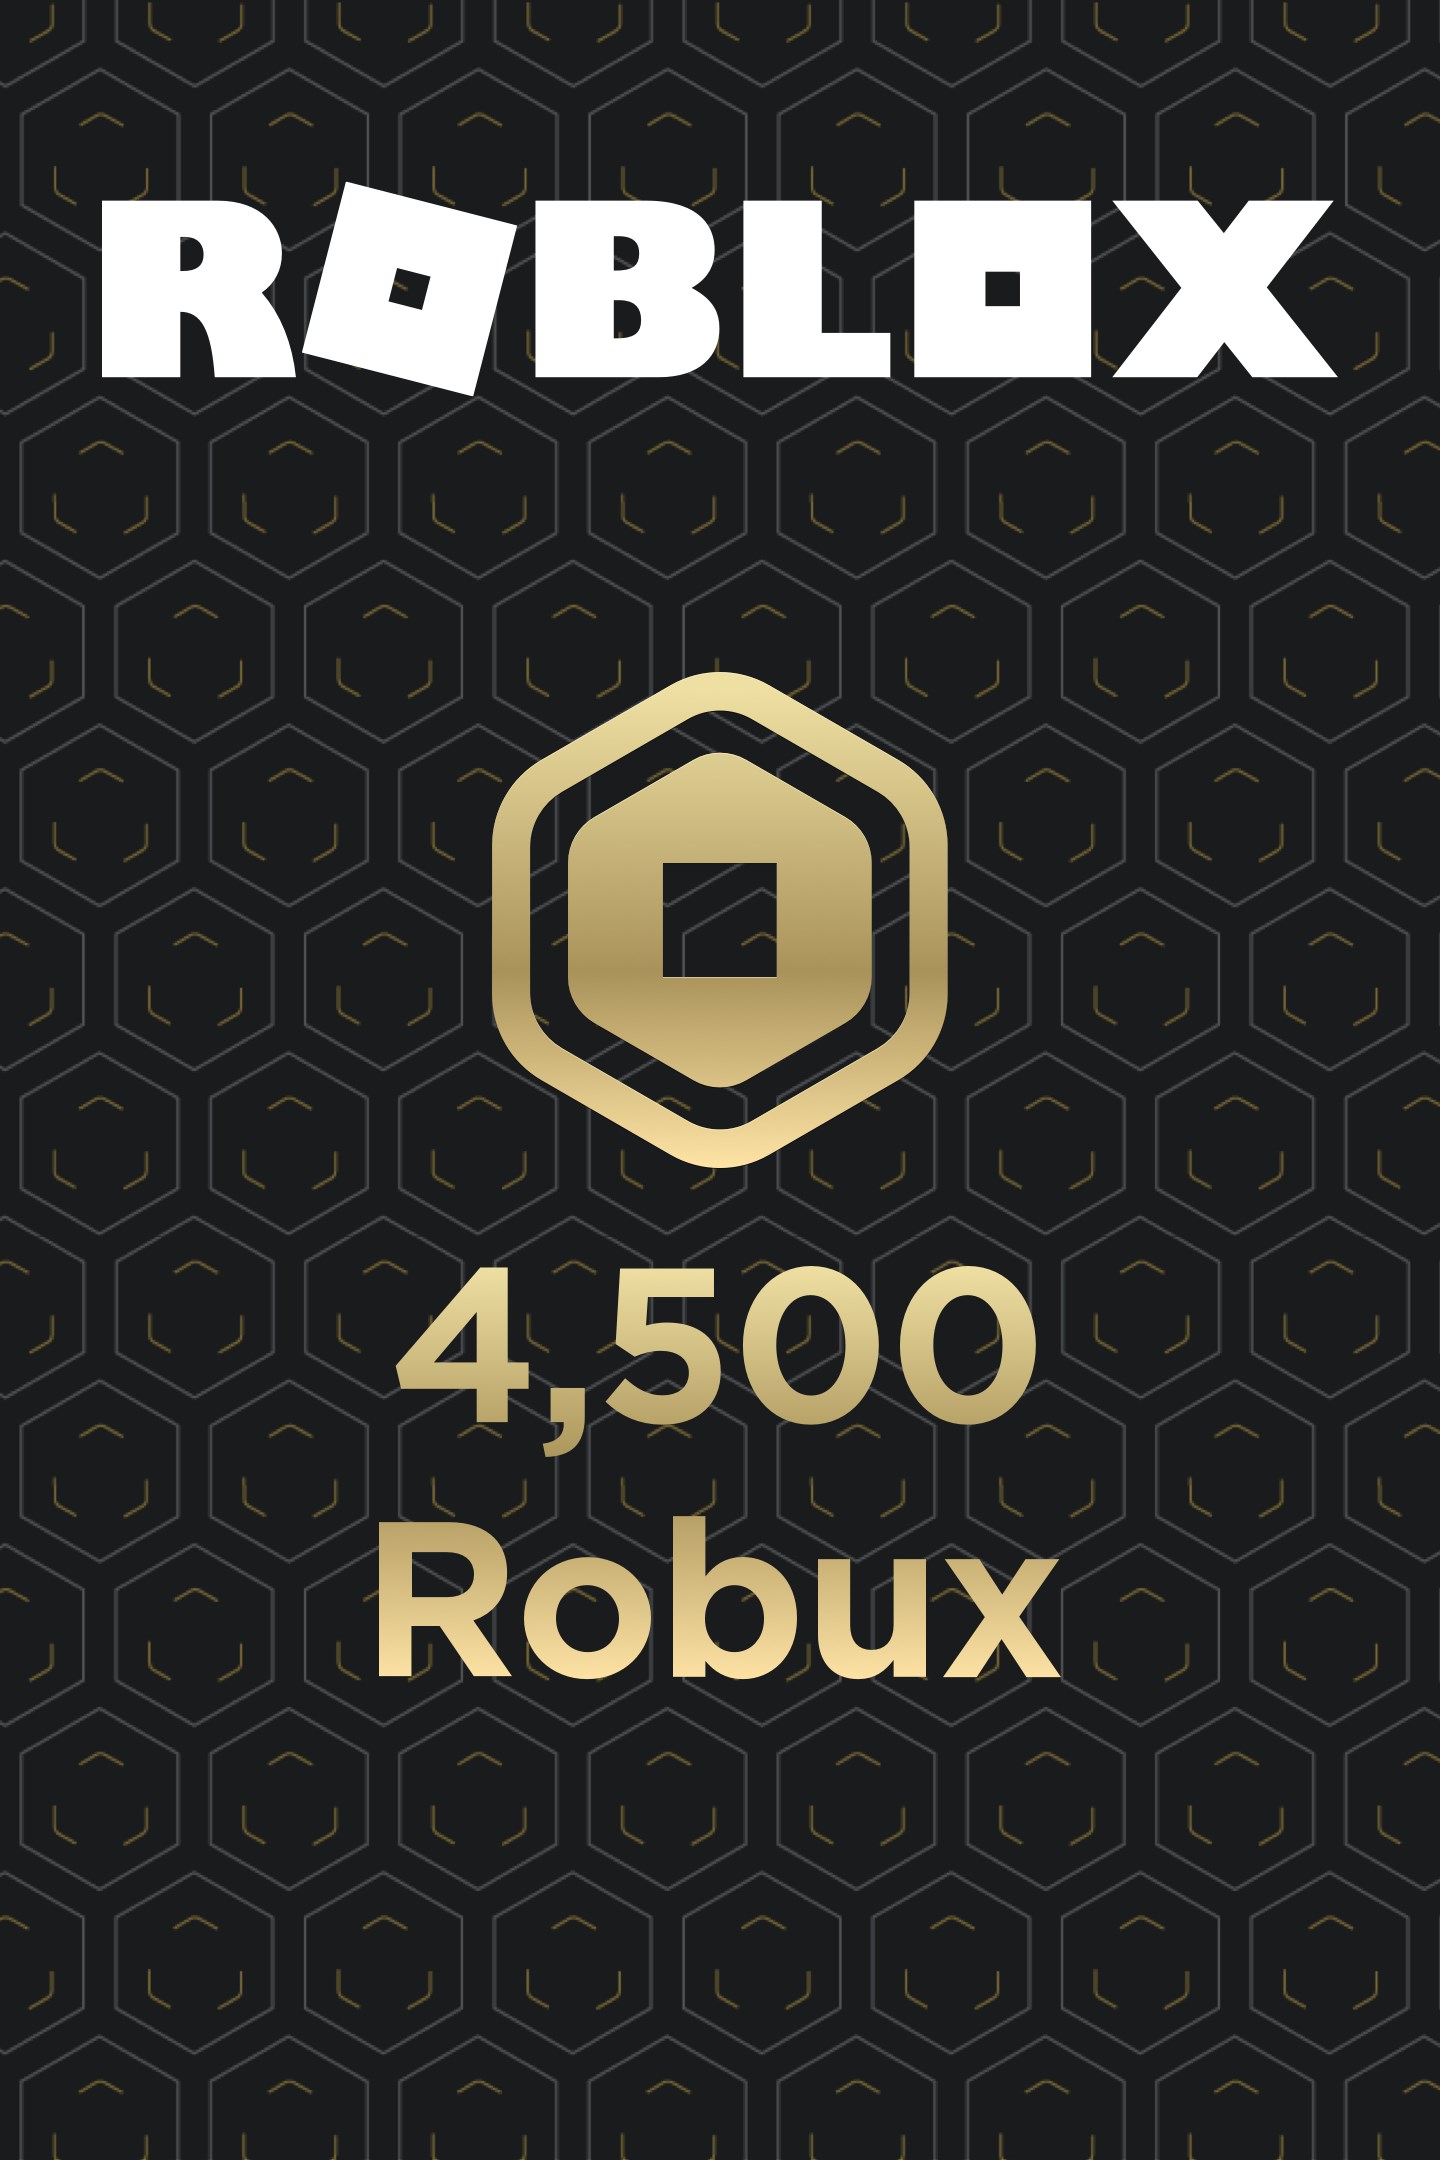 Roblox Xbox - alguem ja comprou robux